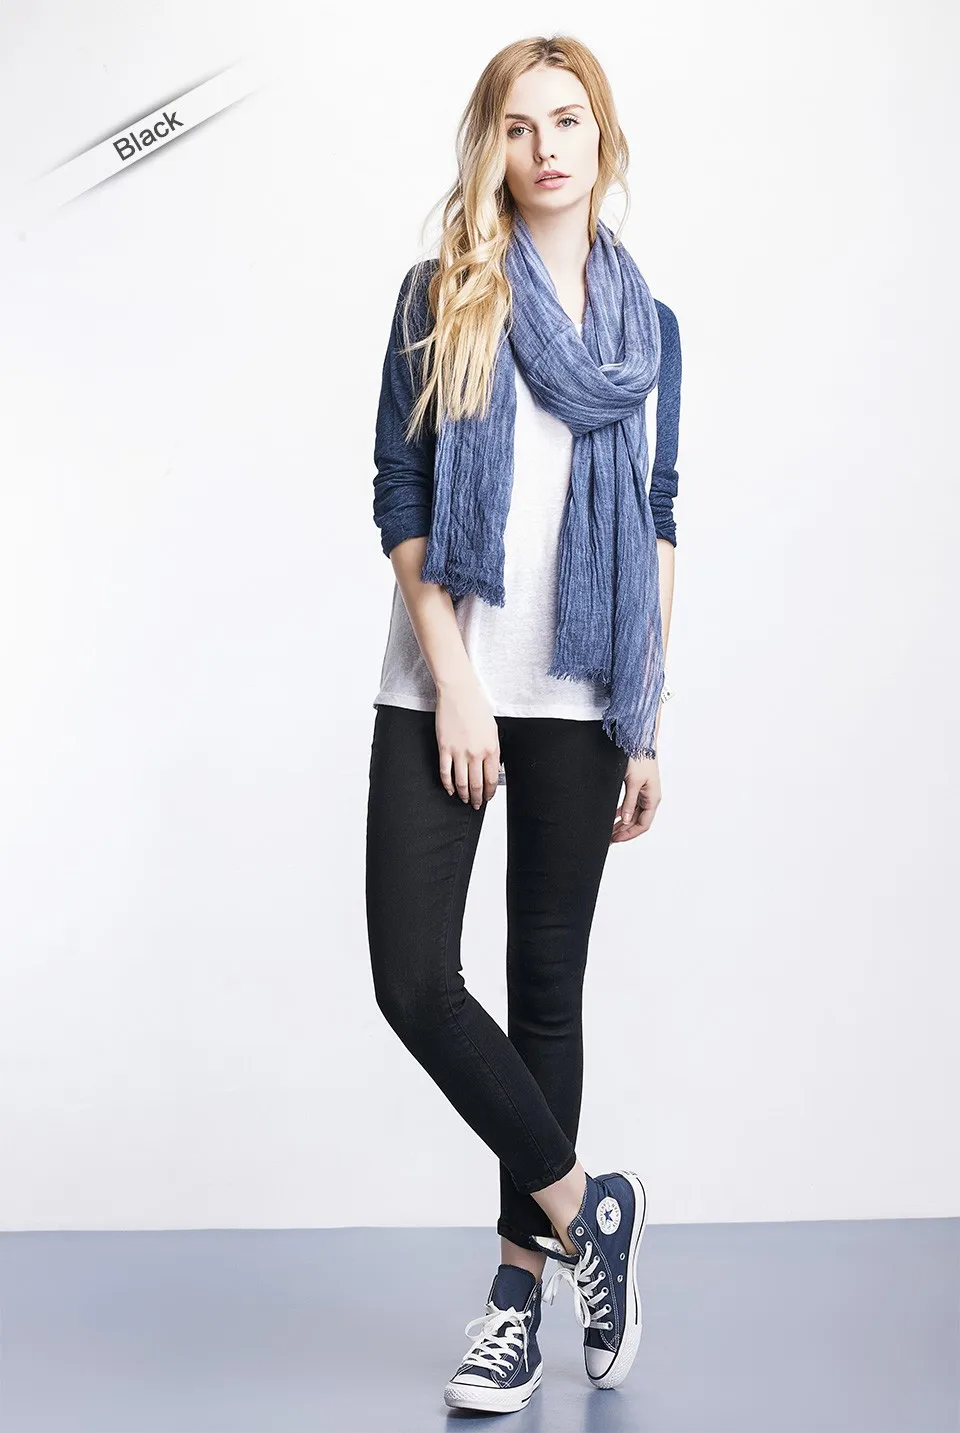 Женские узкие укороченные джинсы LEIJIJEANS, синие джинсы скинни до щиколотки, со средней посадкой, эластичной талией, джинсовые капри, "мамины" джинсы, большие размеры, весна-лето